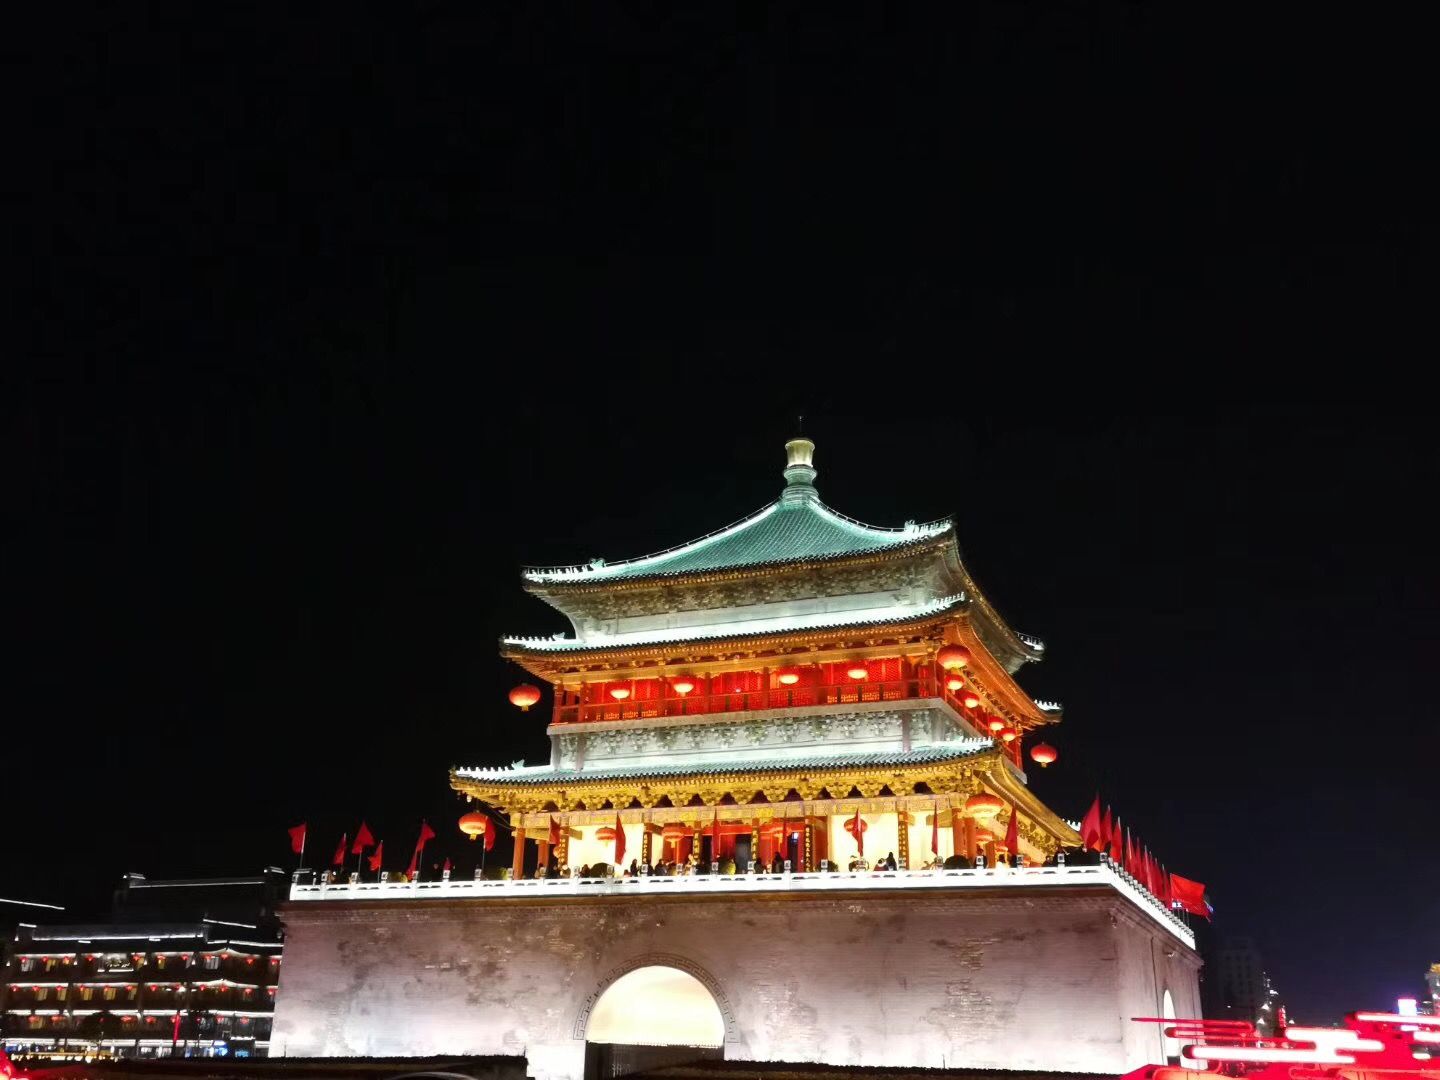 夜景除了广州上海重庆,西安的夜景才是最具有